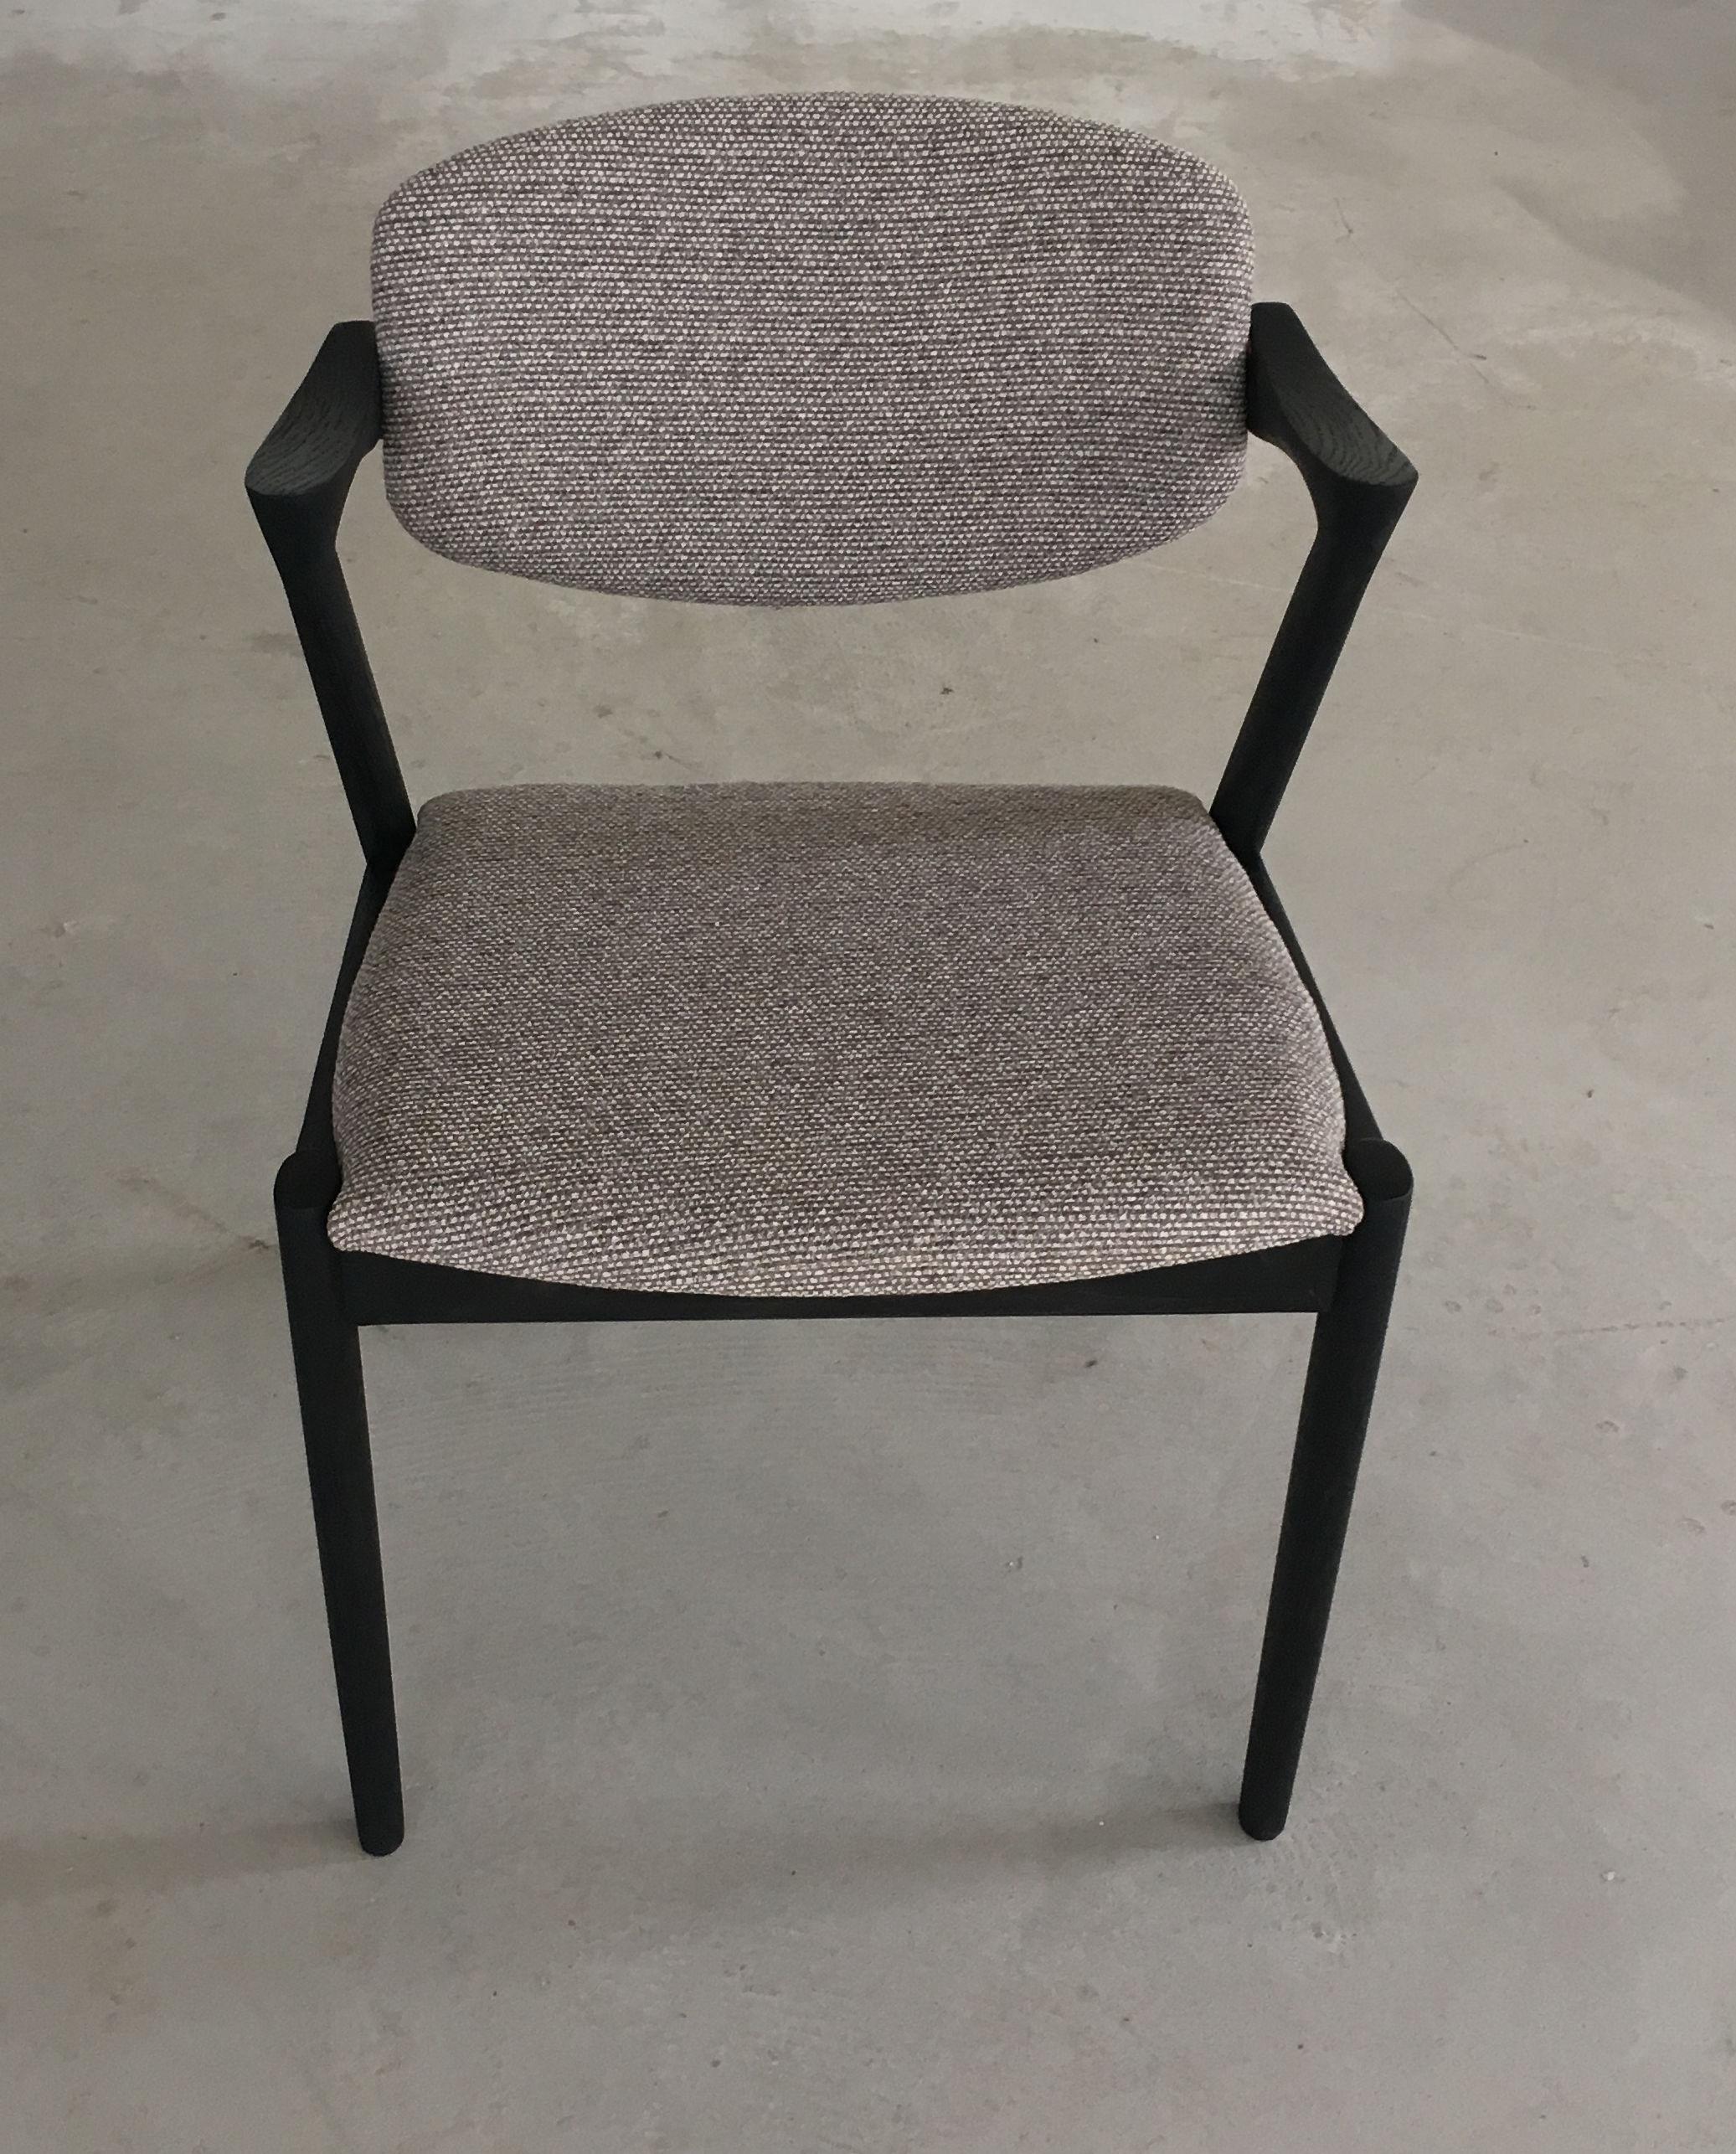 Ensemble de 6 chaises de salle à manger en chêne restaurées et ébonisées, y compris le rembourrage, avec dossier pivotant par Kai Kristiansen pour Schous Møbelfabrik.

Les chaises ont le design léger et élégant typique de Kai Kristiansen qui leur